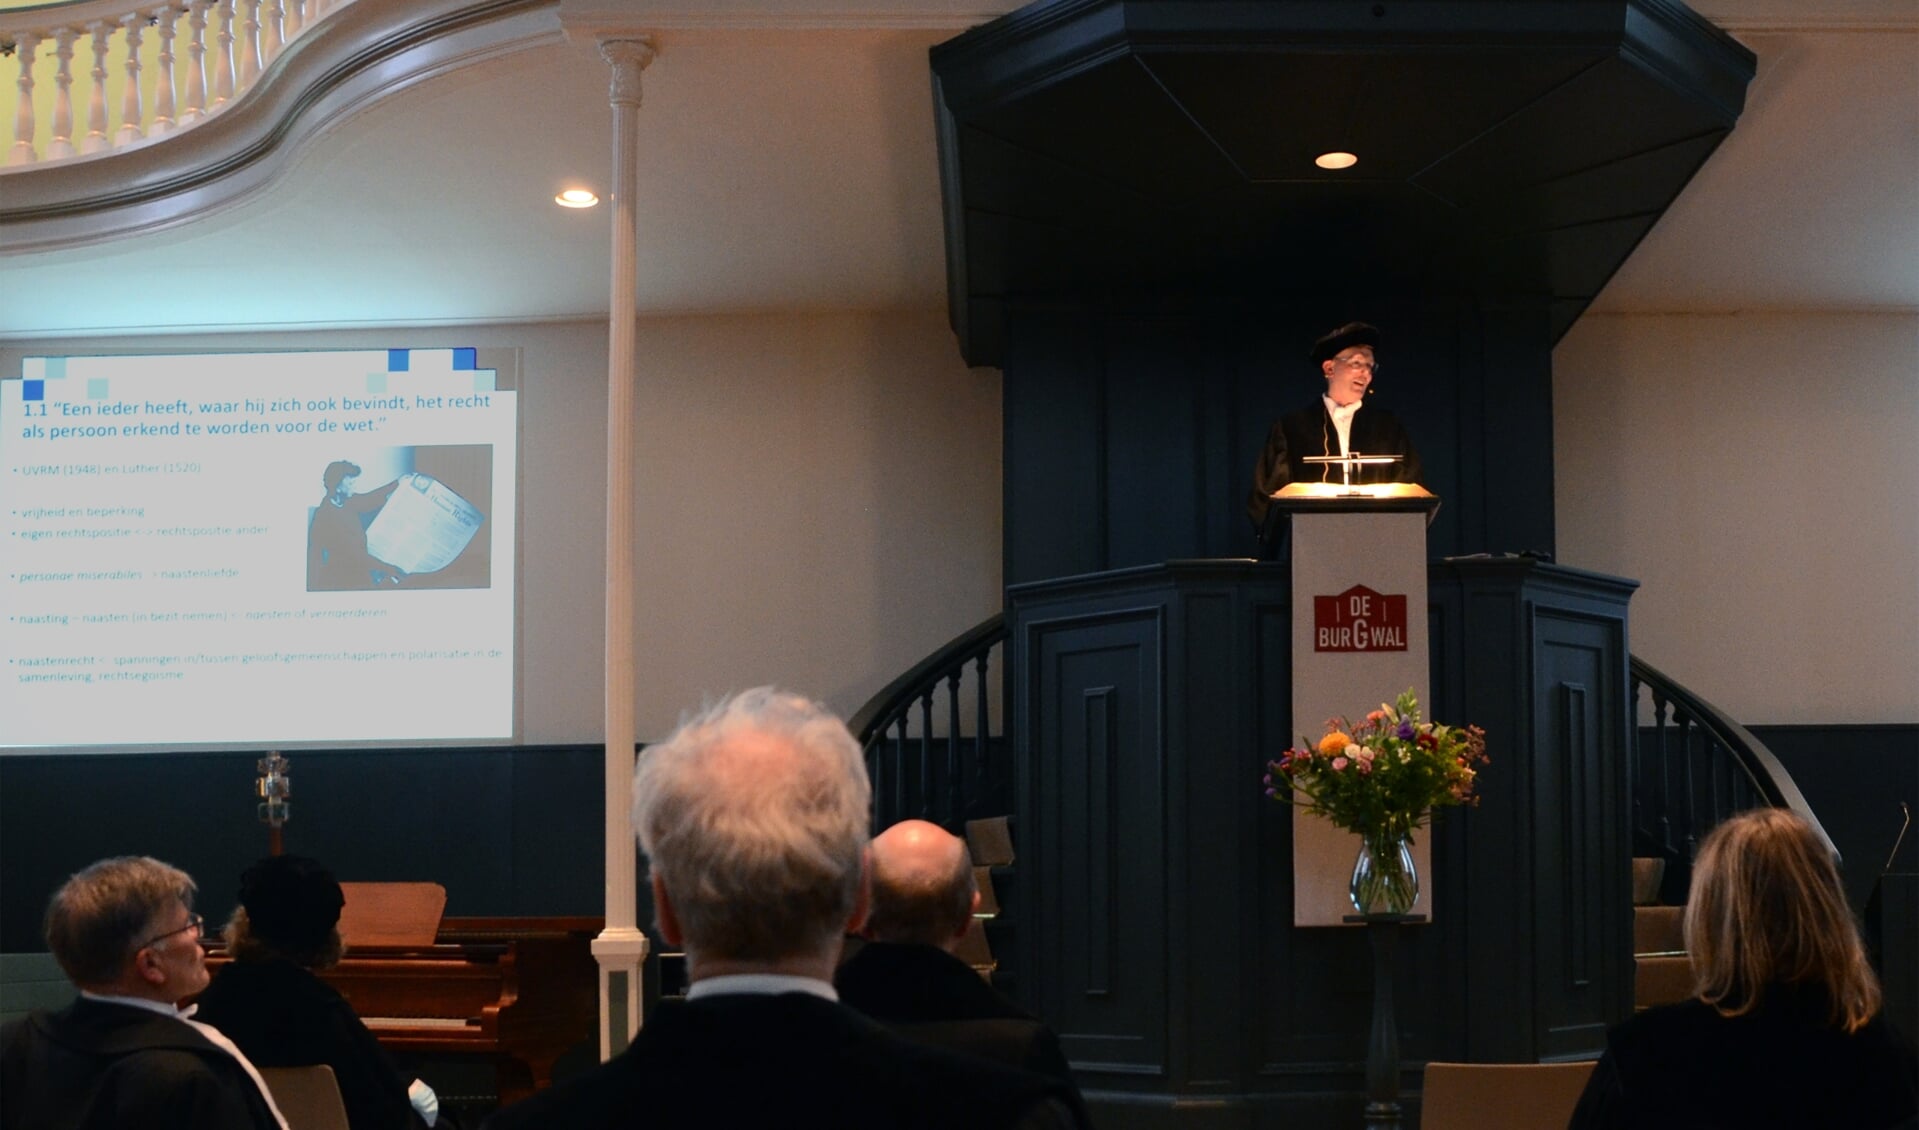 Prof. dr. C. van den Broeke op het spreekgestoelte van De Burgwal